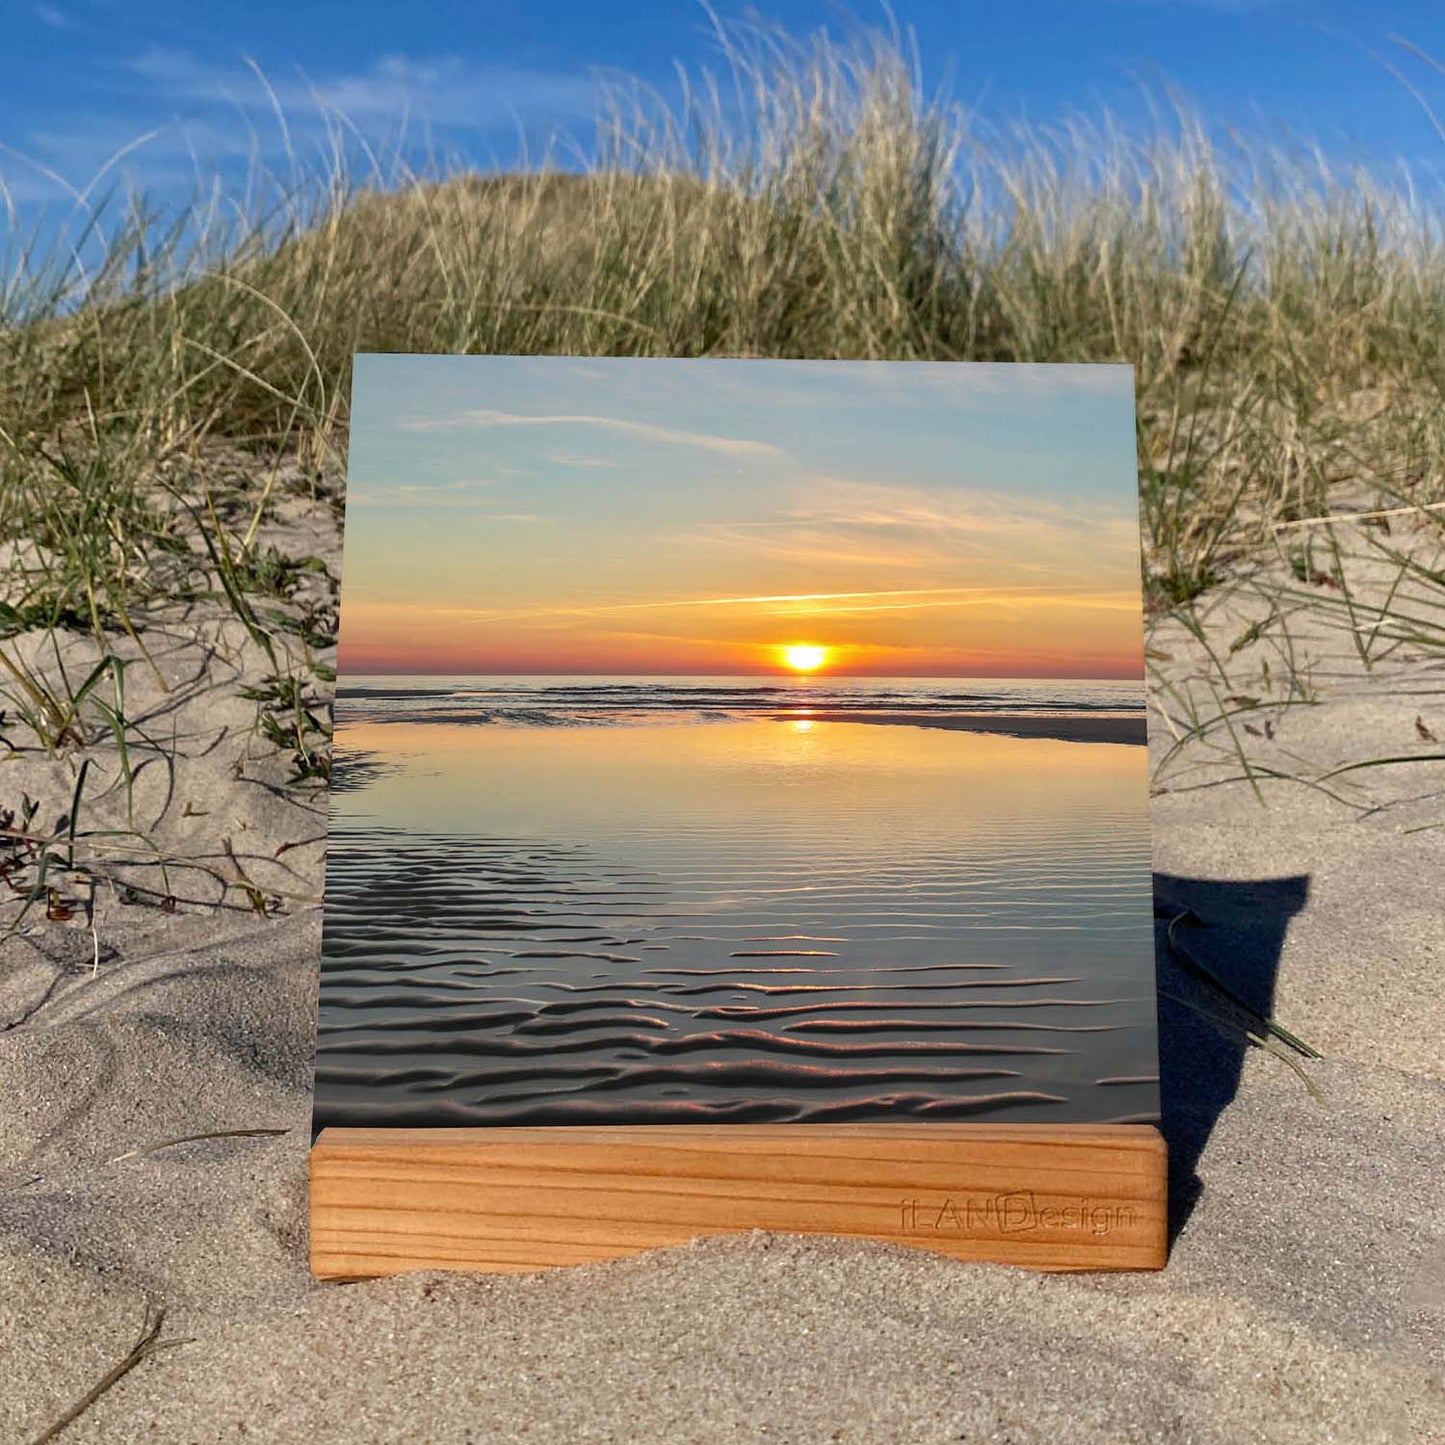 Auf dem Foto ist ein Acrylbild zu sehen, welches in den Sylter Dünen steht. Auf dem Acrylbild ist ein Sonnenuntergang in Wenningstedt auf Sylt zu sehen. Die Sonne scheint auf den Horizont zu treffen und färbt den Horizont rot-orange. Im Vordergrund sieht man die typischen Wellen im Sand, wenn Ebbe ist. Auf dem verbleibenden Wasser sieht man eine tolle Spiegelung des Sonnenuntergangs.